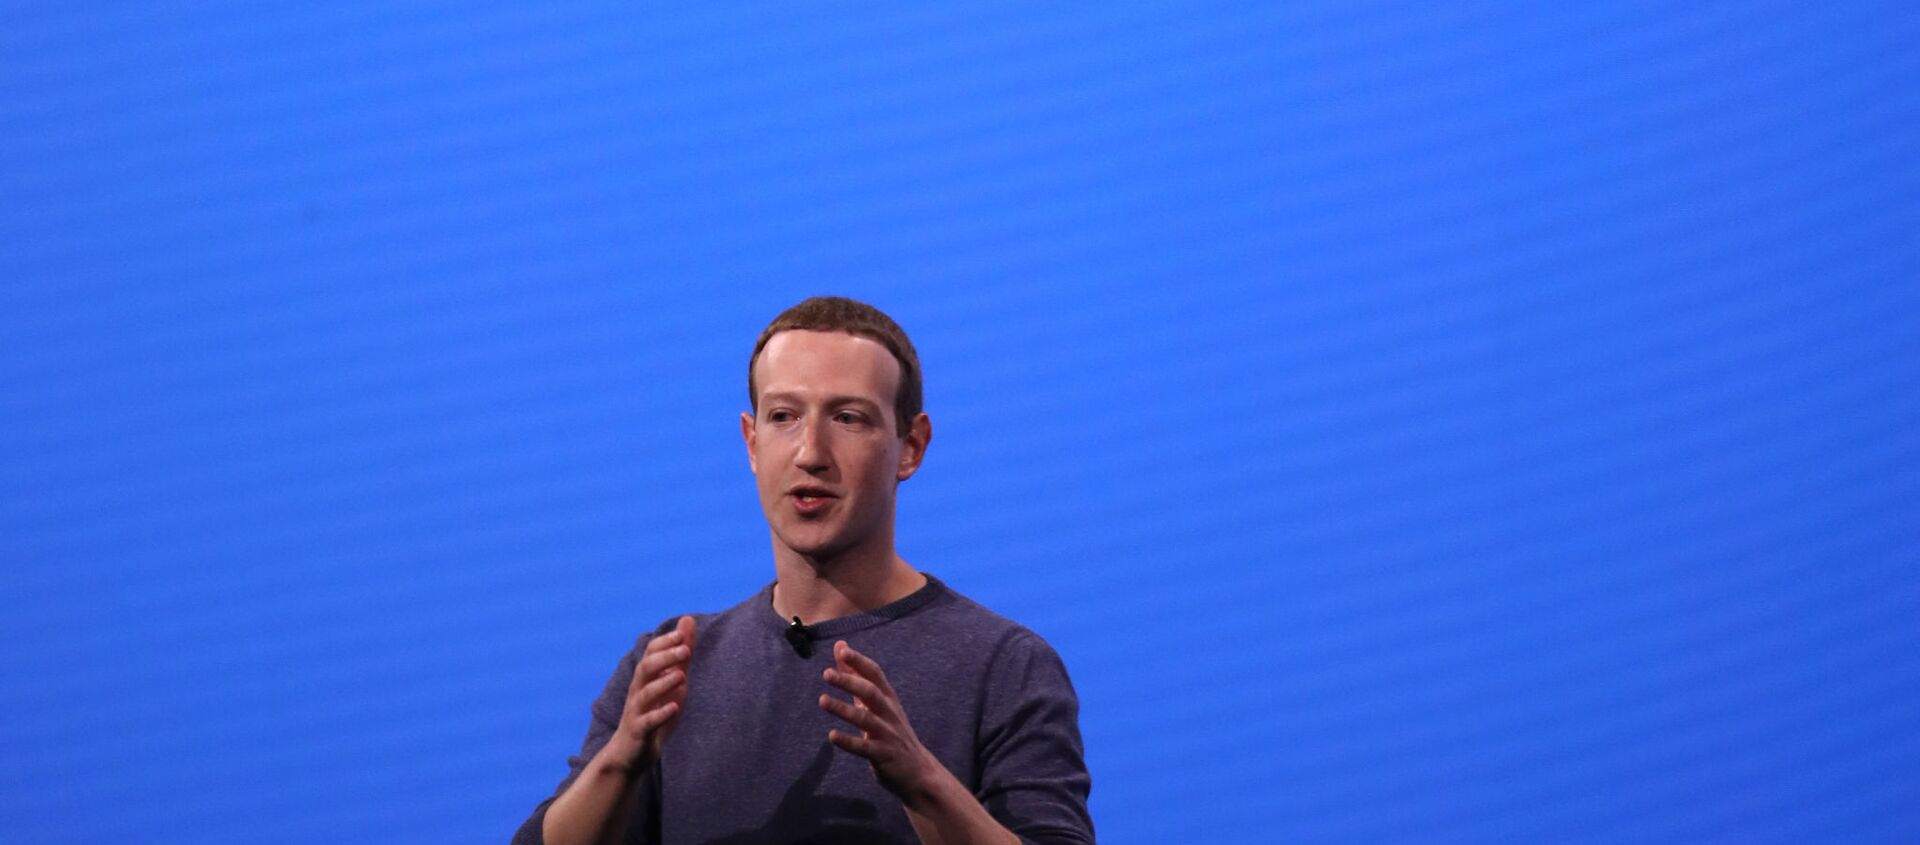 كاليفورنيا - 30 أبريل: الرئيس التنفيذي لشركة فيسبوك مارك زوكربيرج يتحدث خلال مؤتمر : مطورون فيسبوك  في 30 أبريل 2019 في سان خوسيه ، - سبوتنيك عربي, 1920, 31.01.2021